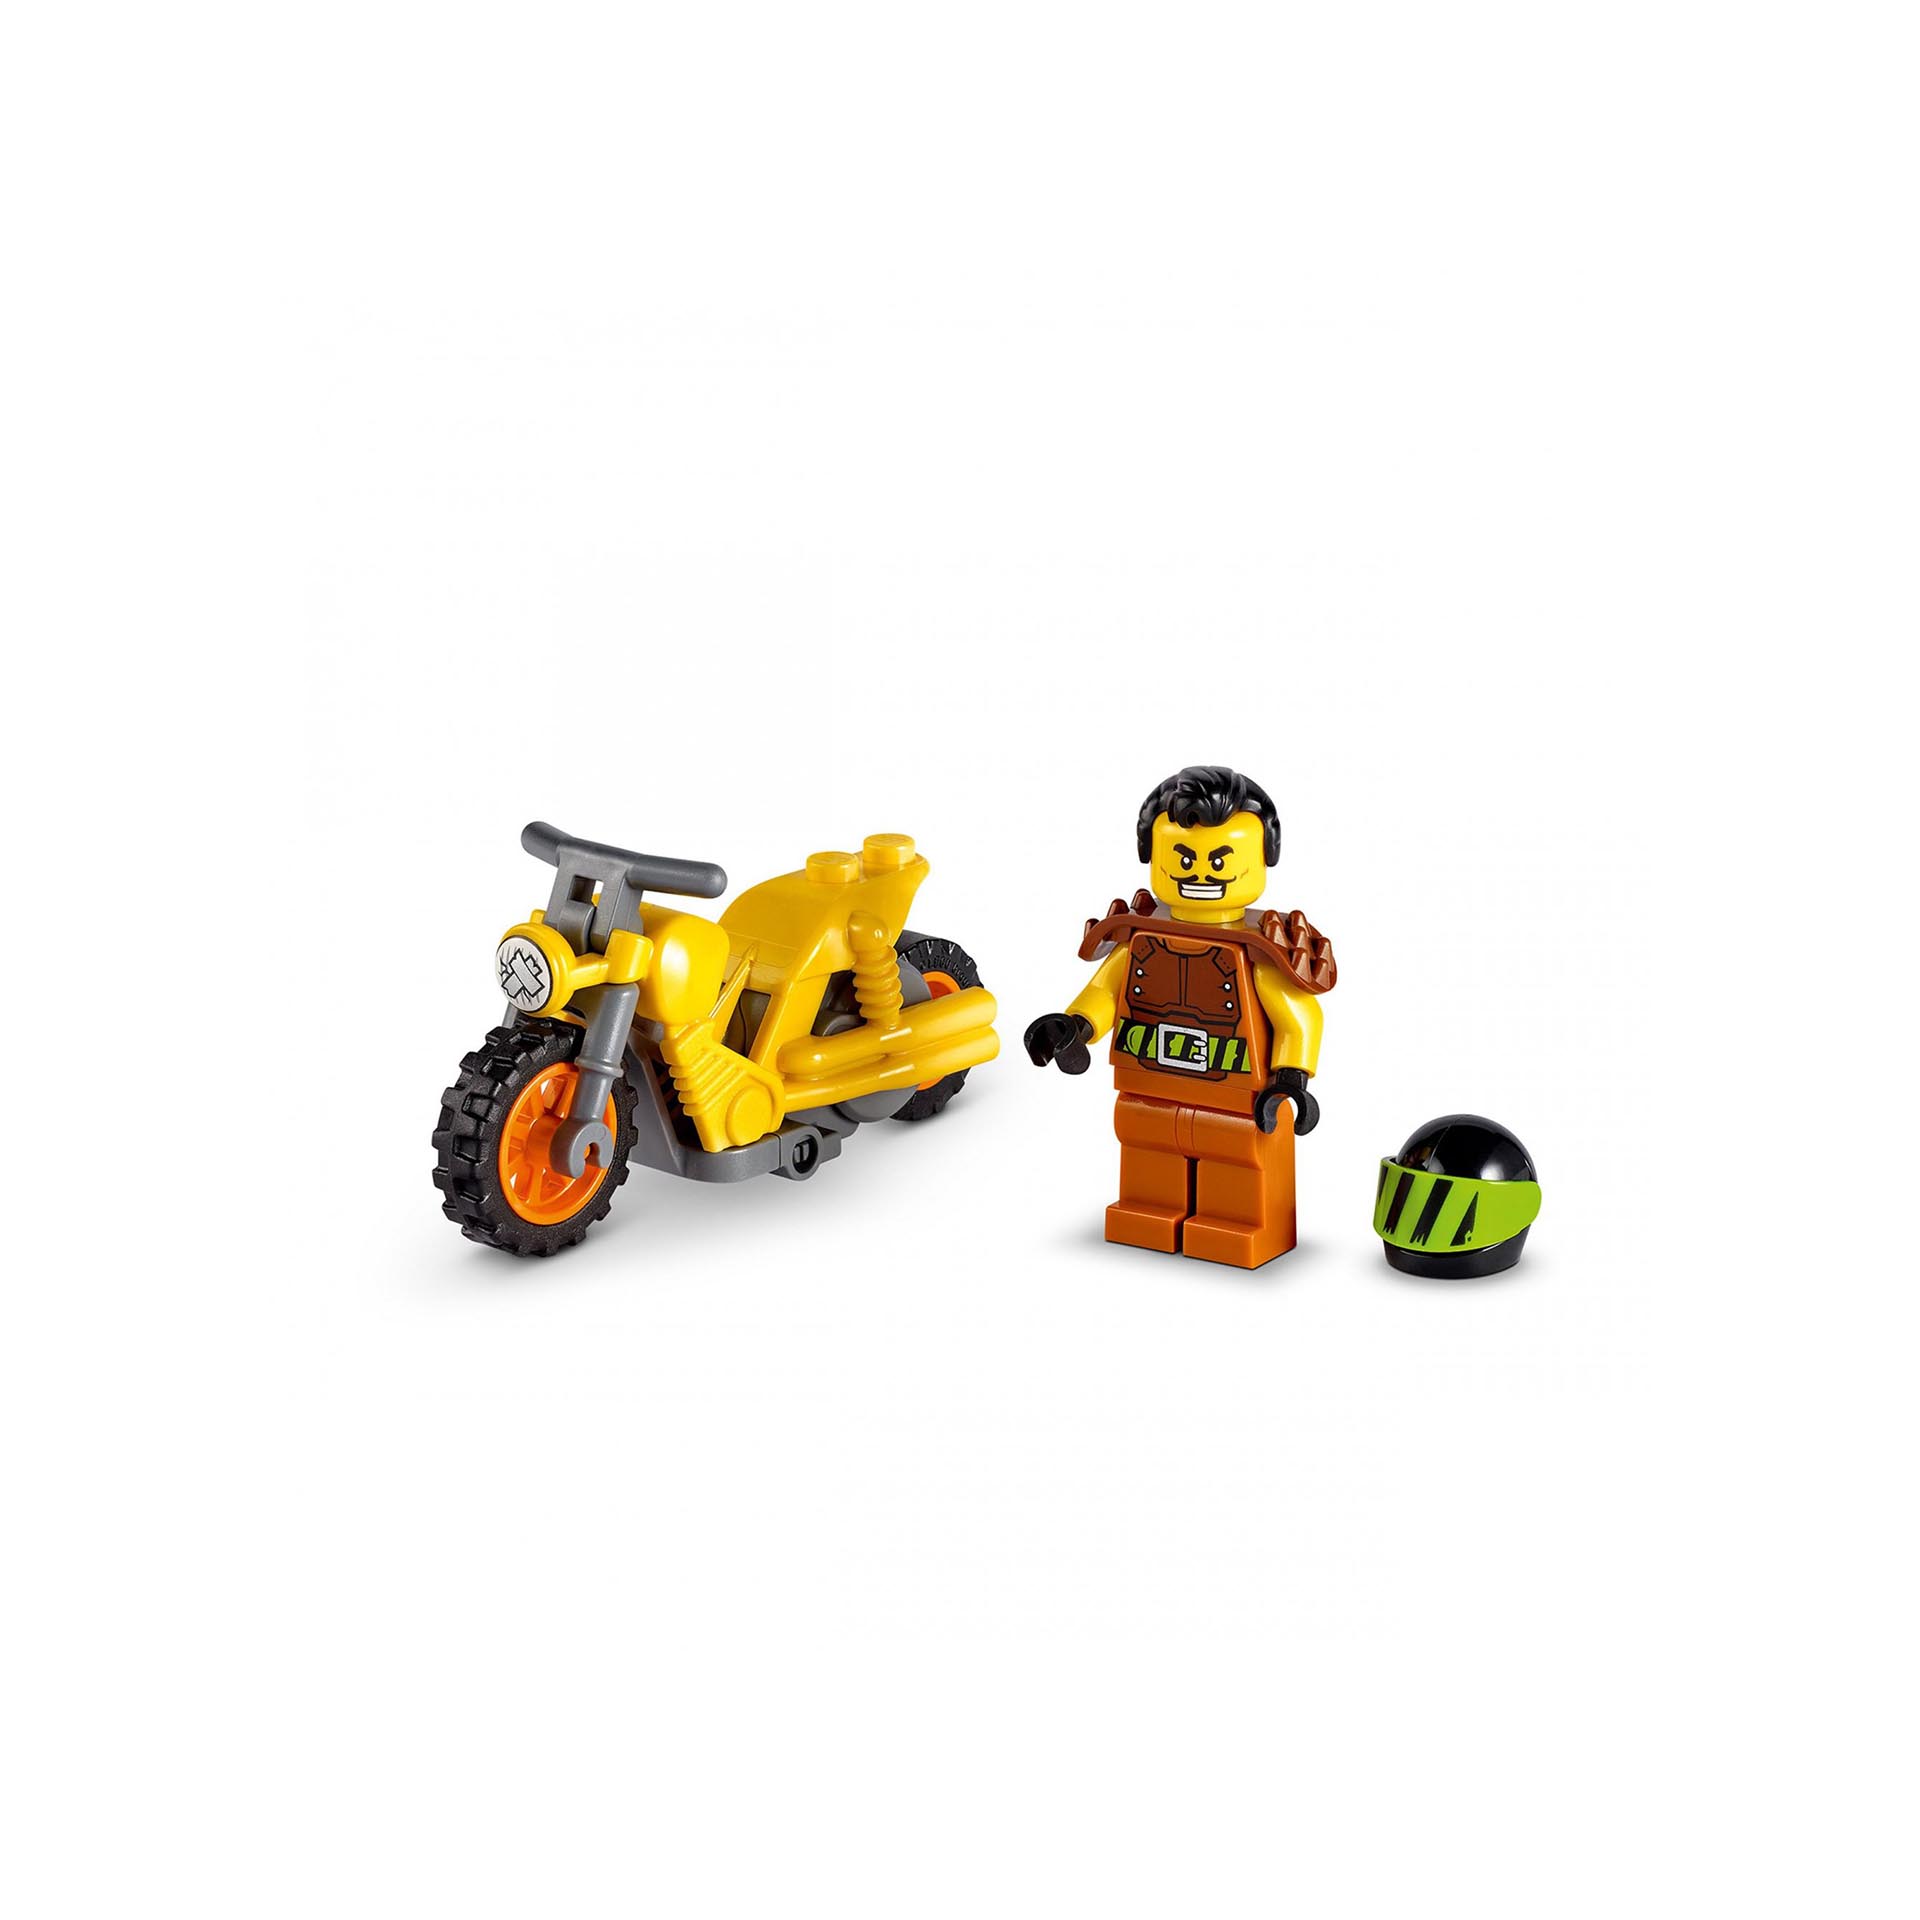 LEGO City Stuntz Stunt Bike da Demolizione con Moto Giocattolo con Meccanismo a 60297, , large